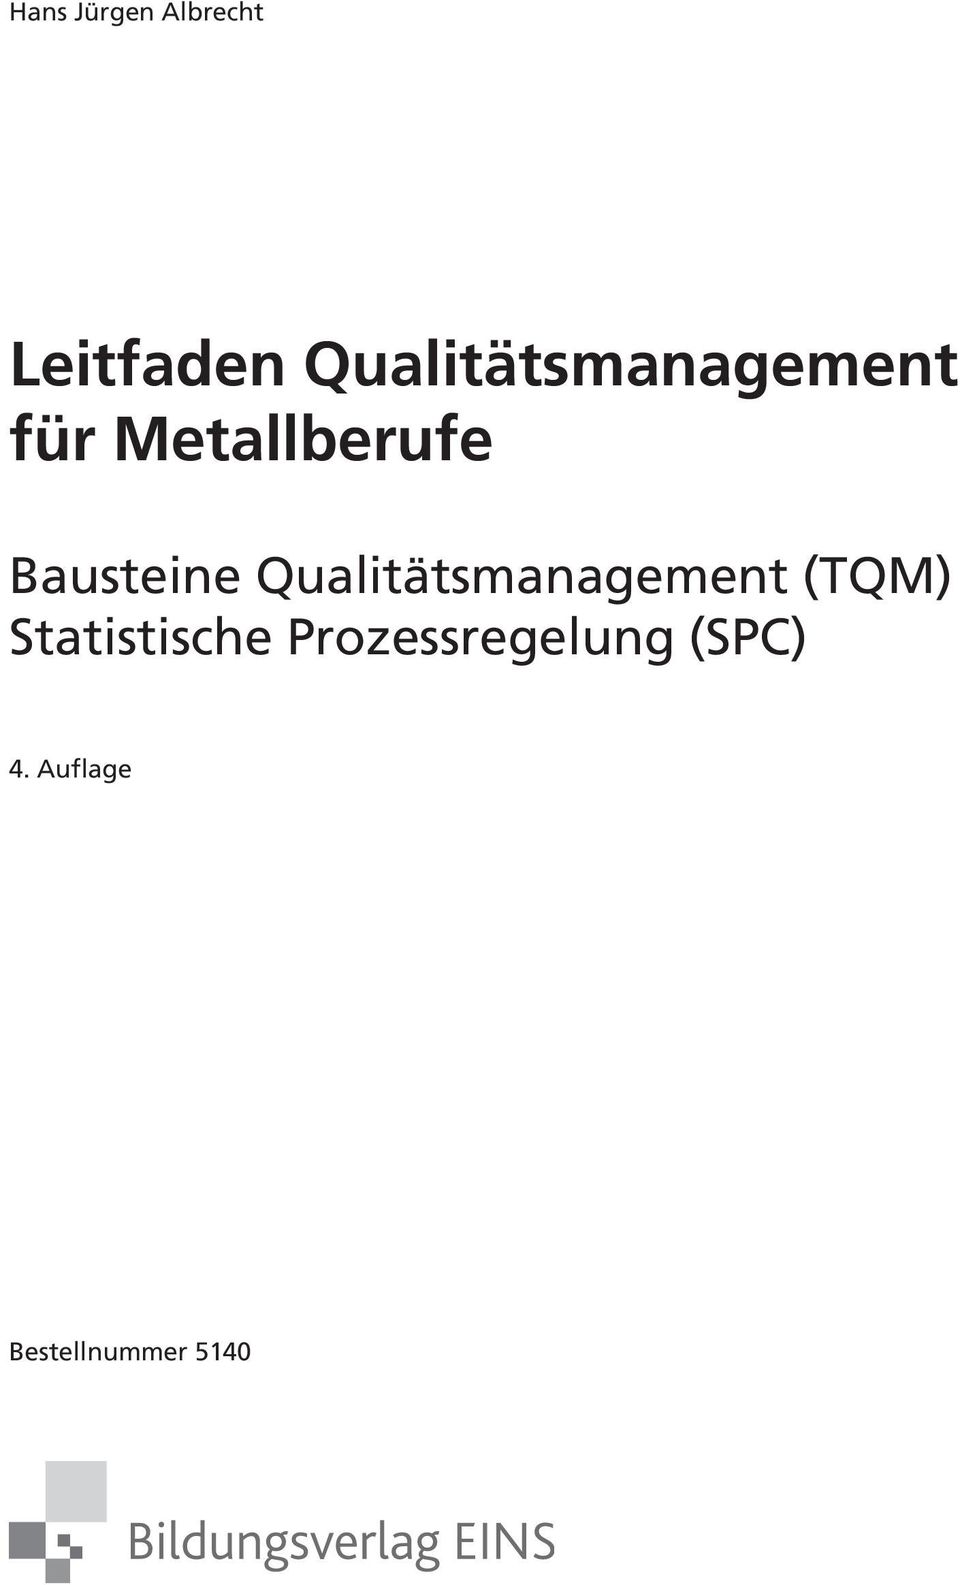 Bausteine Qualitätsmanagement (TQM)